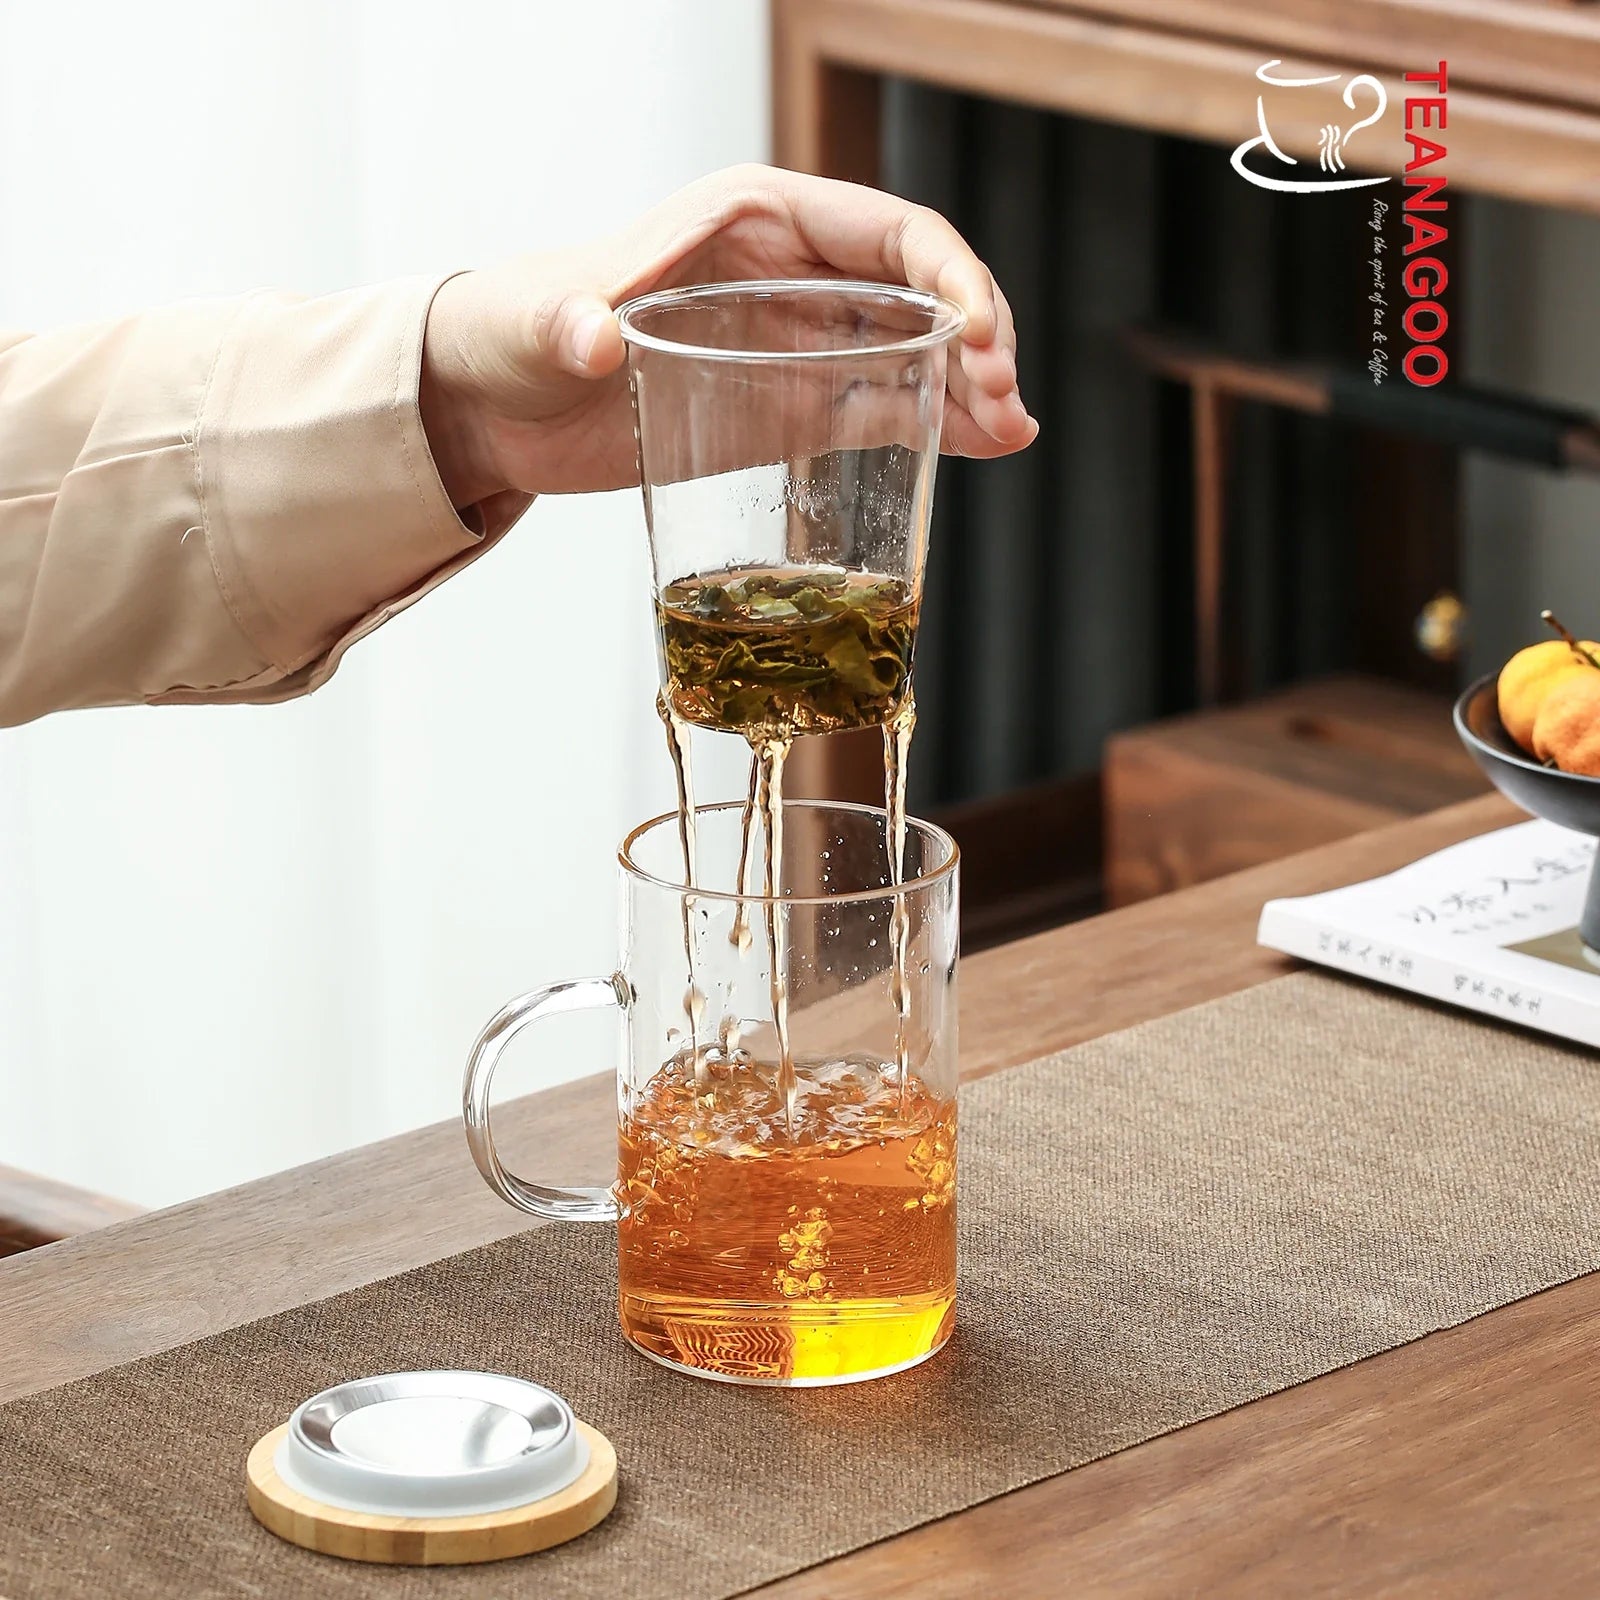 handmade portable glass infusion tea mug 390ml with lid and filter